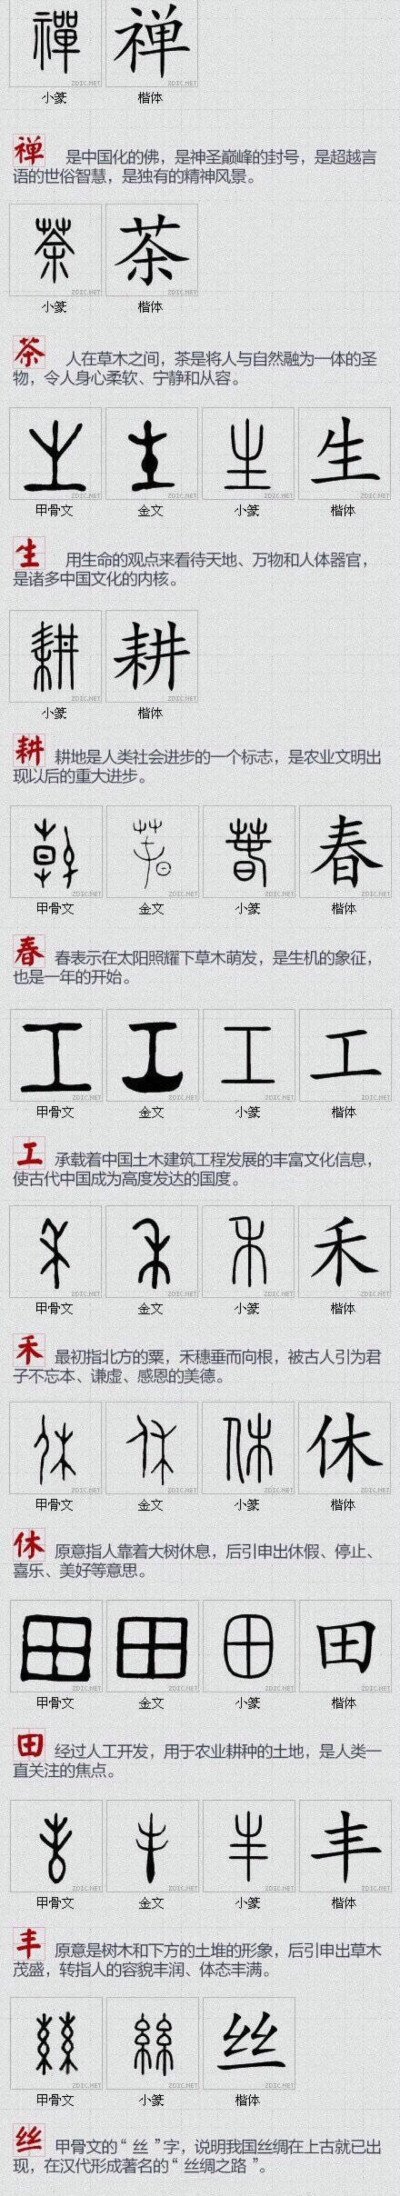 100个非常具有中国文化的汉字。